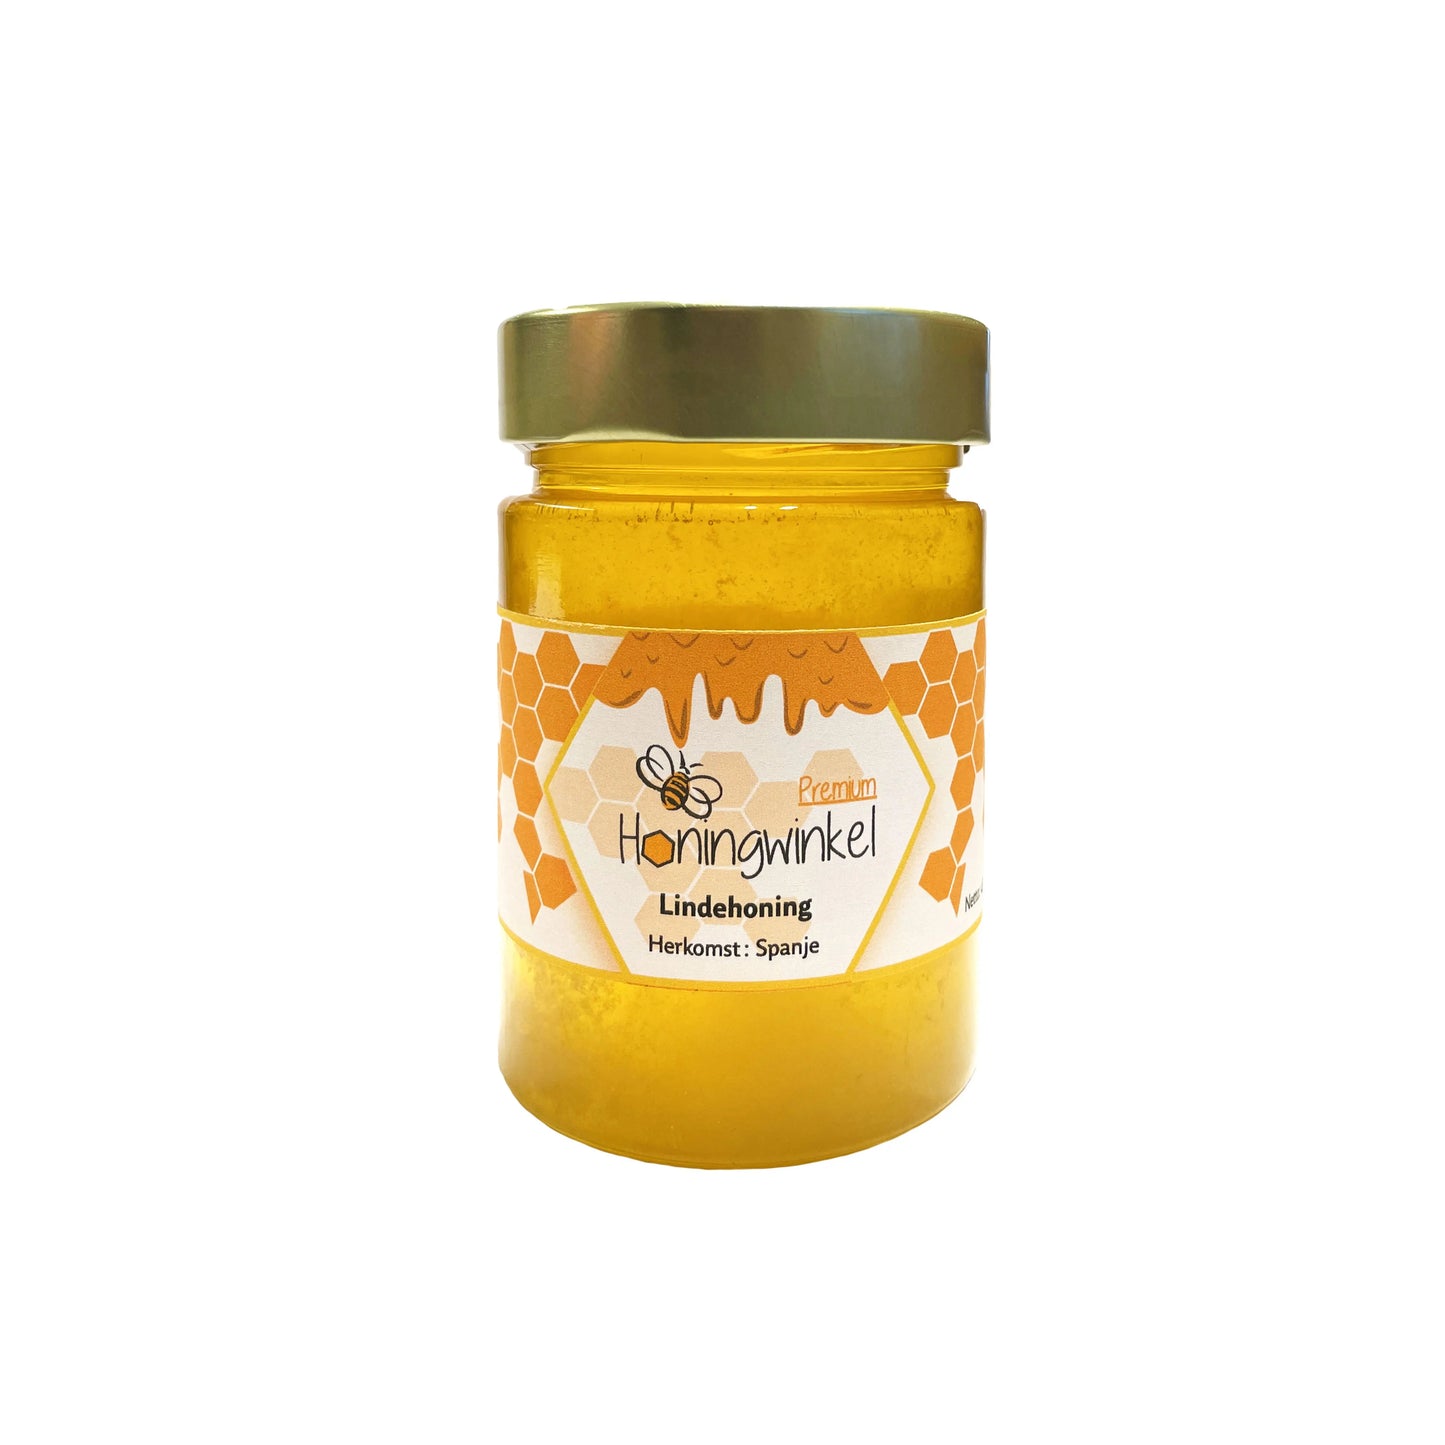 Premium lindehoning Spanje 450g Honingwinkel (vloeibaar) - Honingwinkel